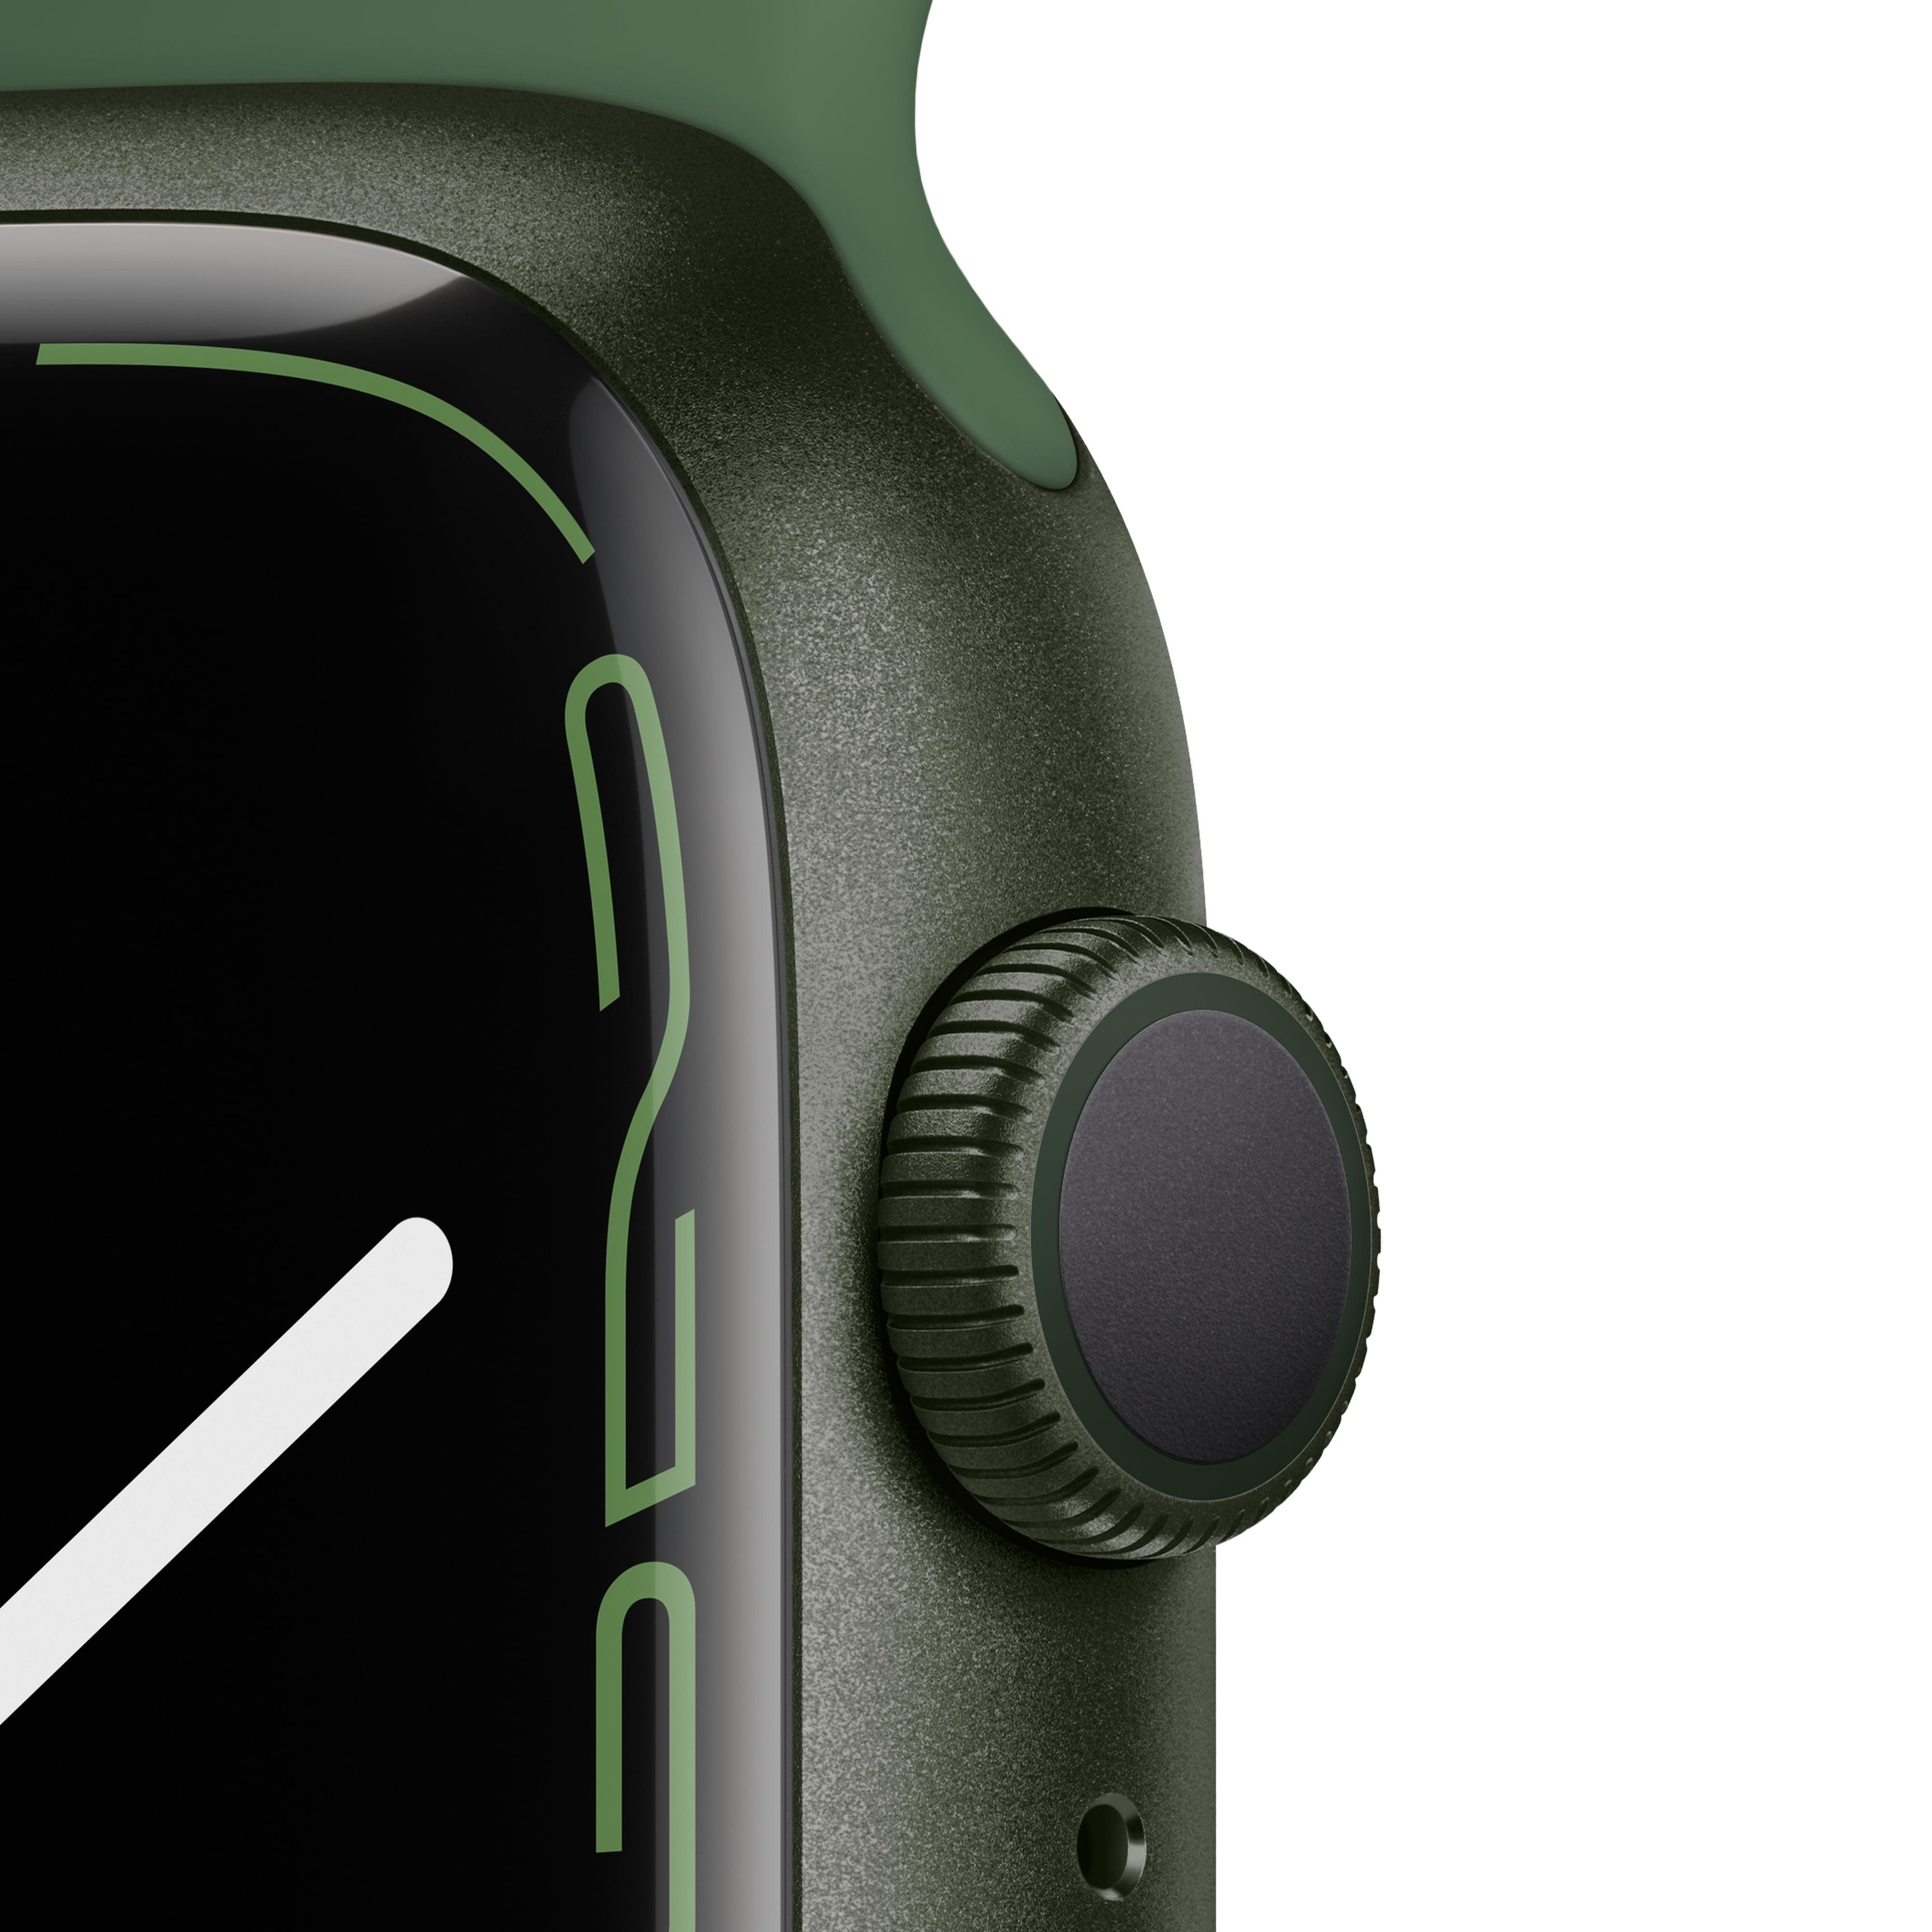 Apple Watch Series 7 GPS, 45mm Green Aluminum Case with Clover Sport Band -  Regular